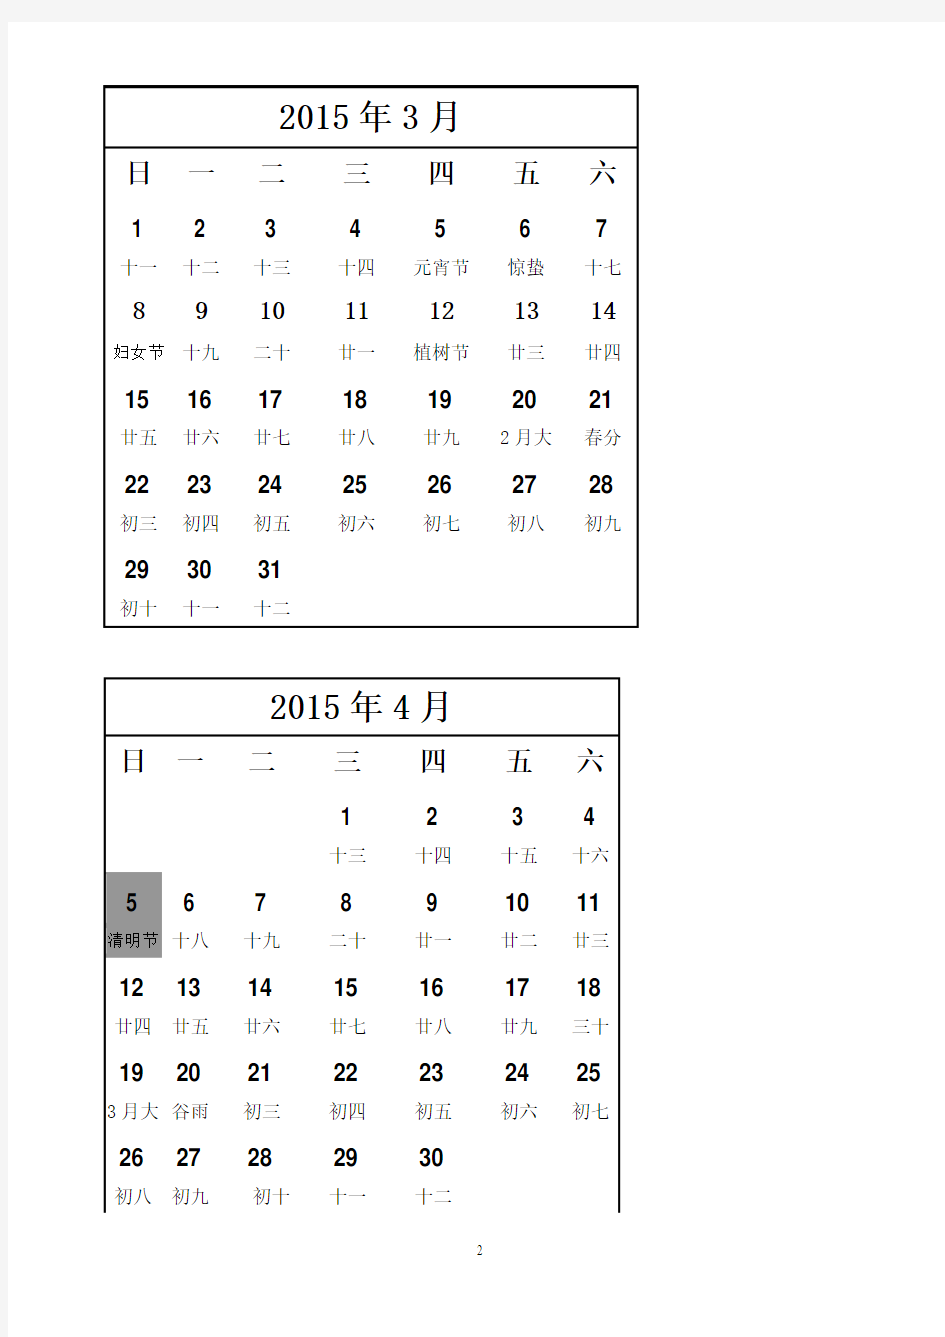 2015年度日历表